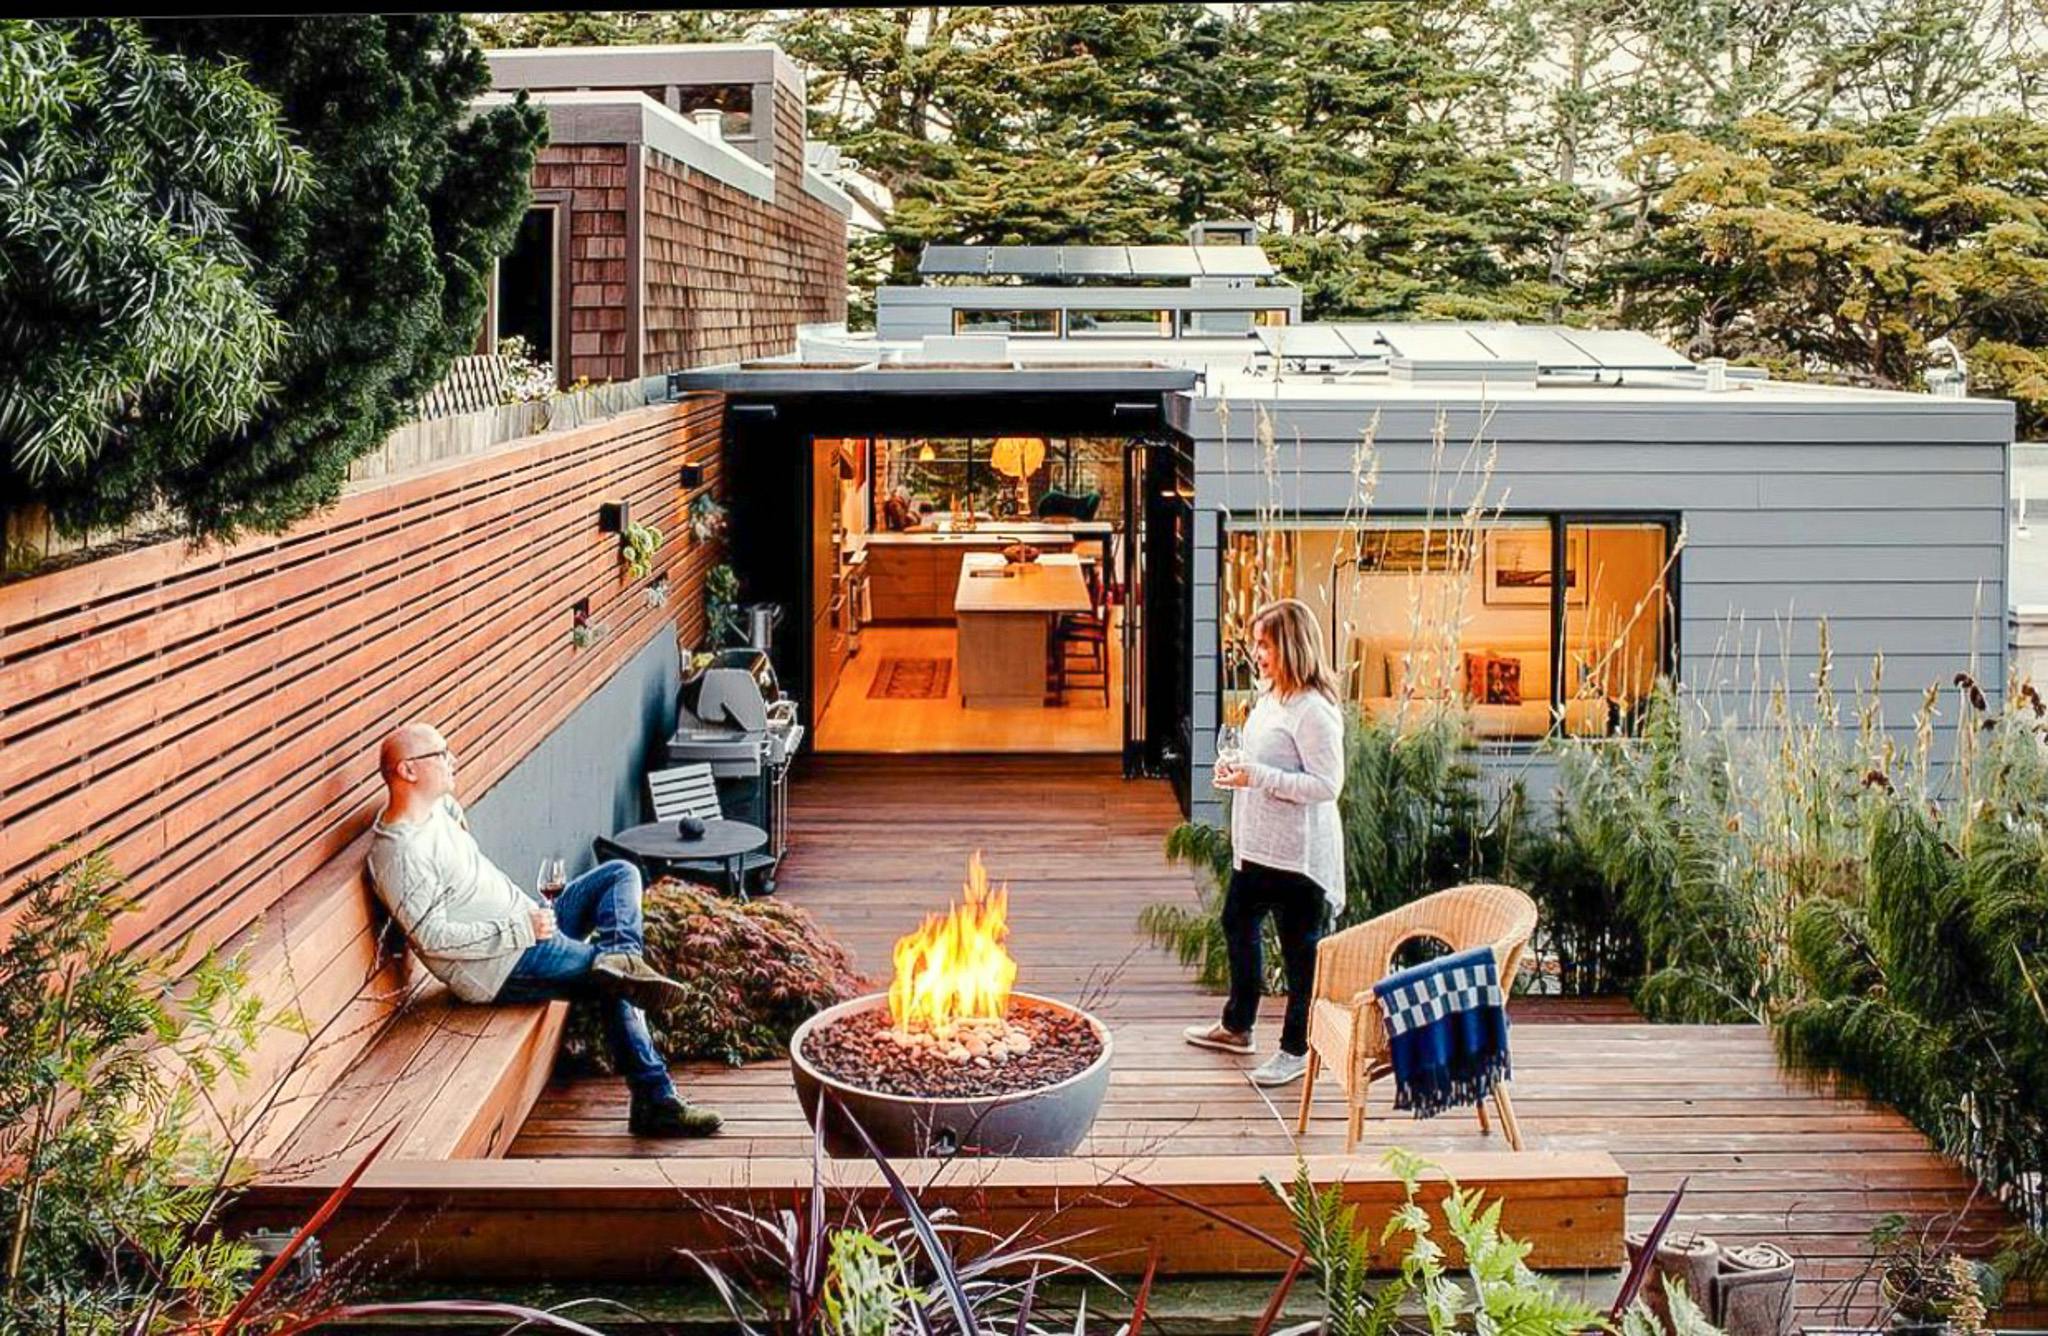 opening glass patio doors create outdoor living